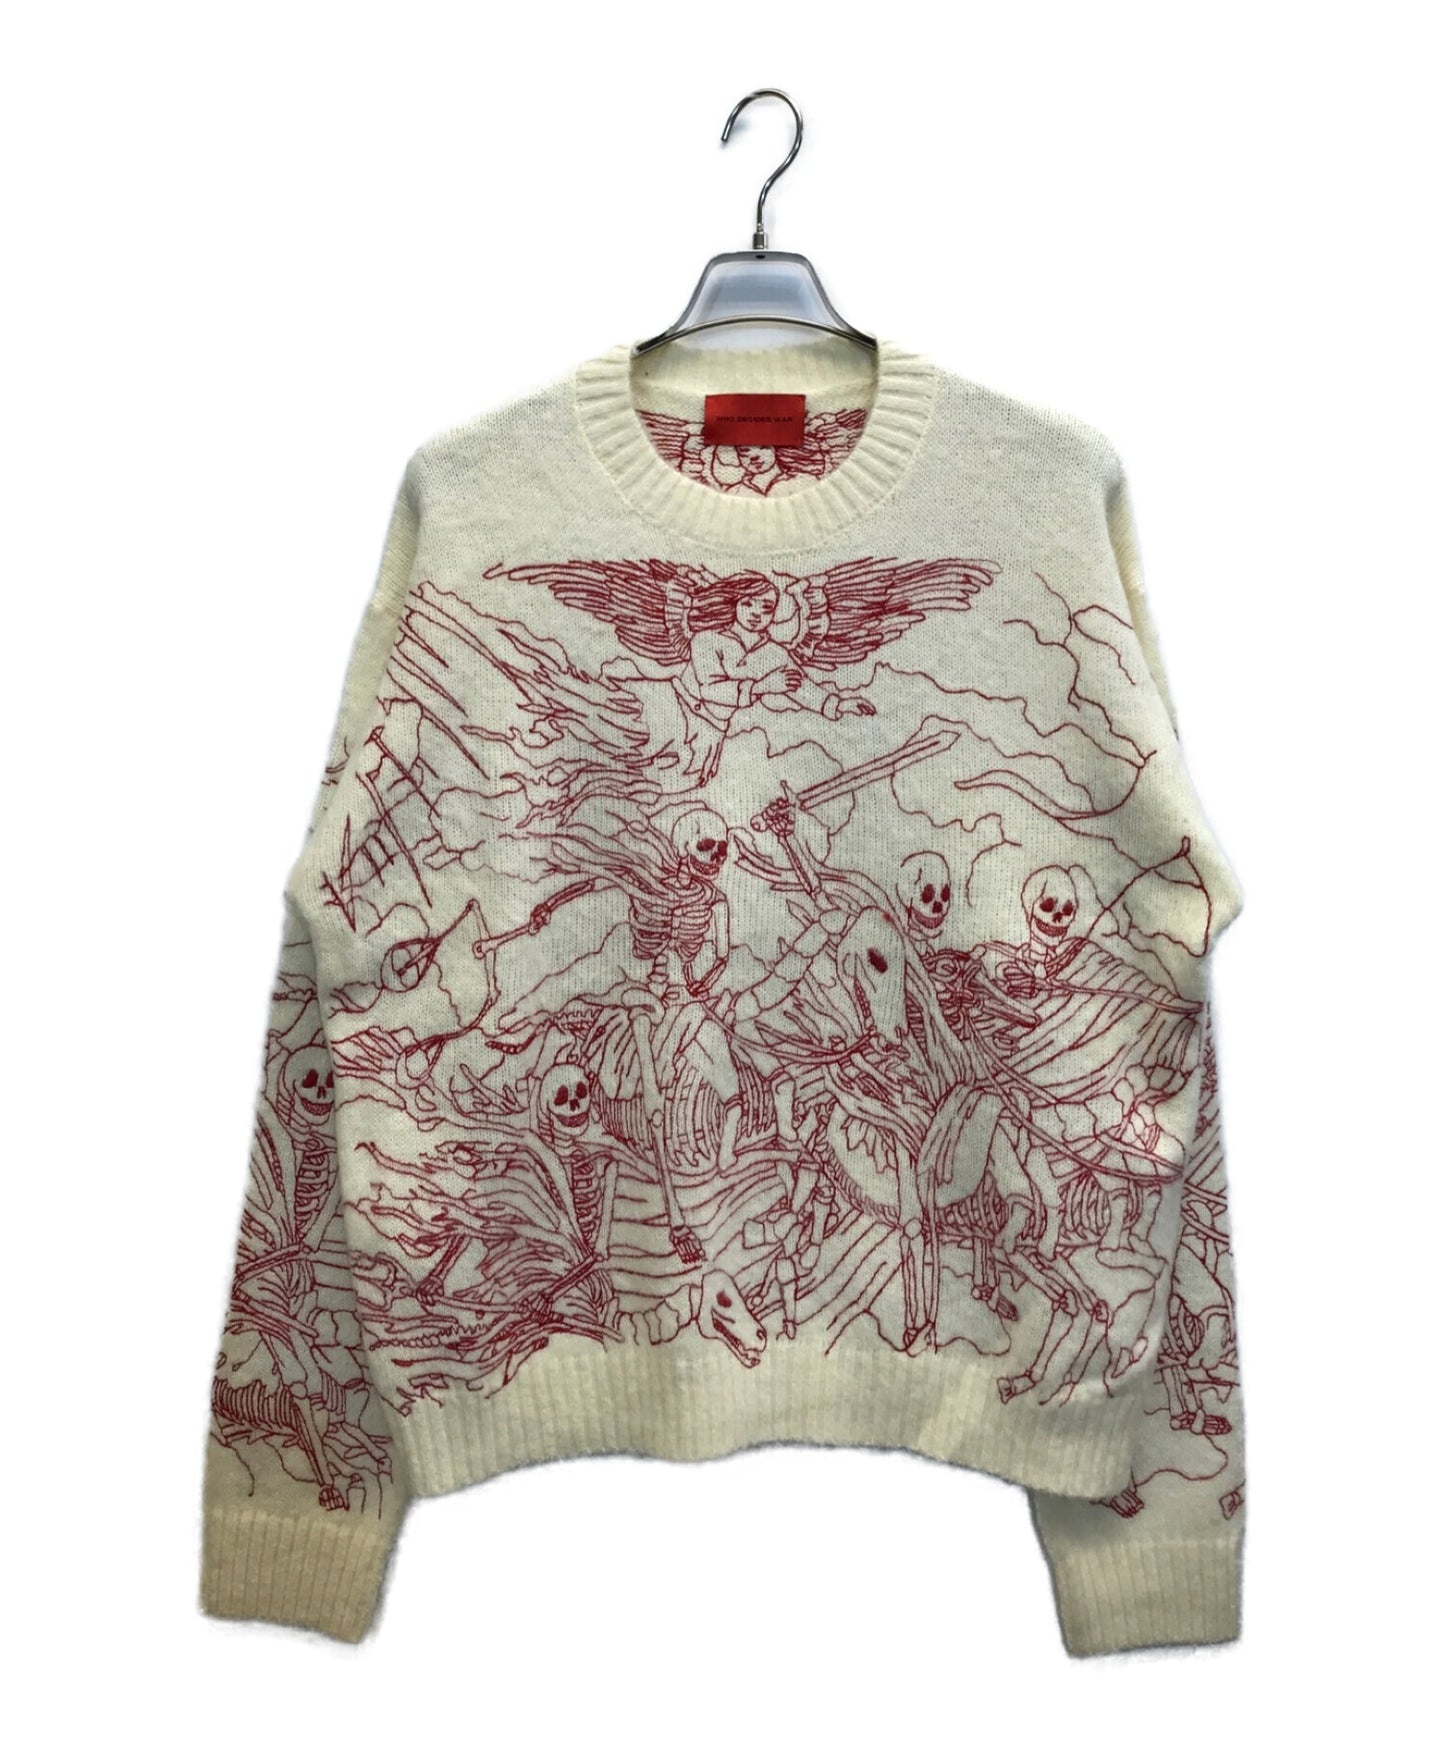 ผู้ตัดสินใจ War Horsemen Crewneck Sweater Embroidered Stitch Crewneck เสื้อถัก